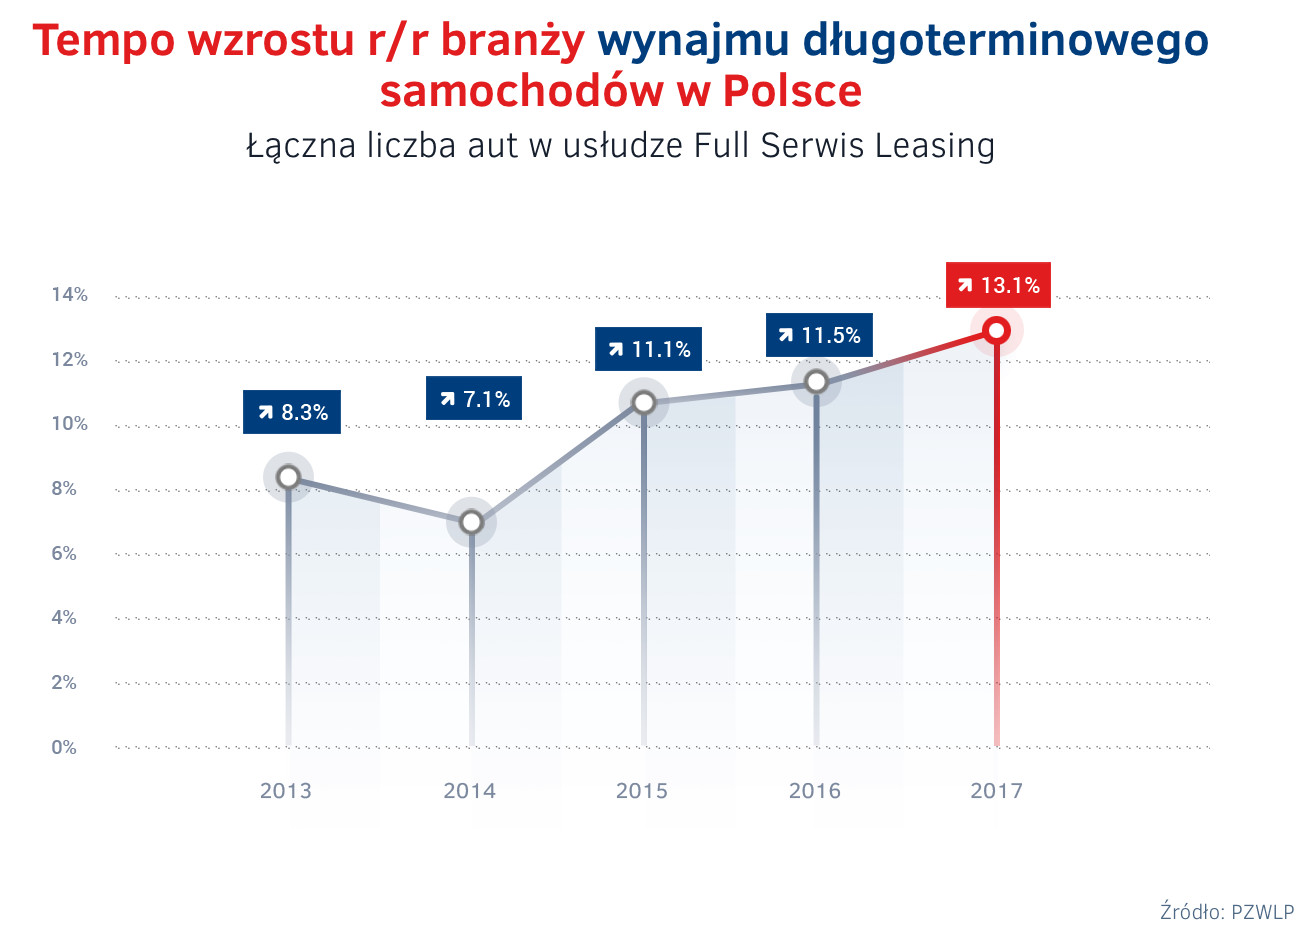 PZWLP publikuje wyniki wynajmu długoterminowego aut i Rent a Car w Polsce za 2017 r. 